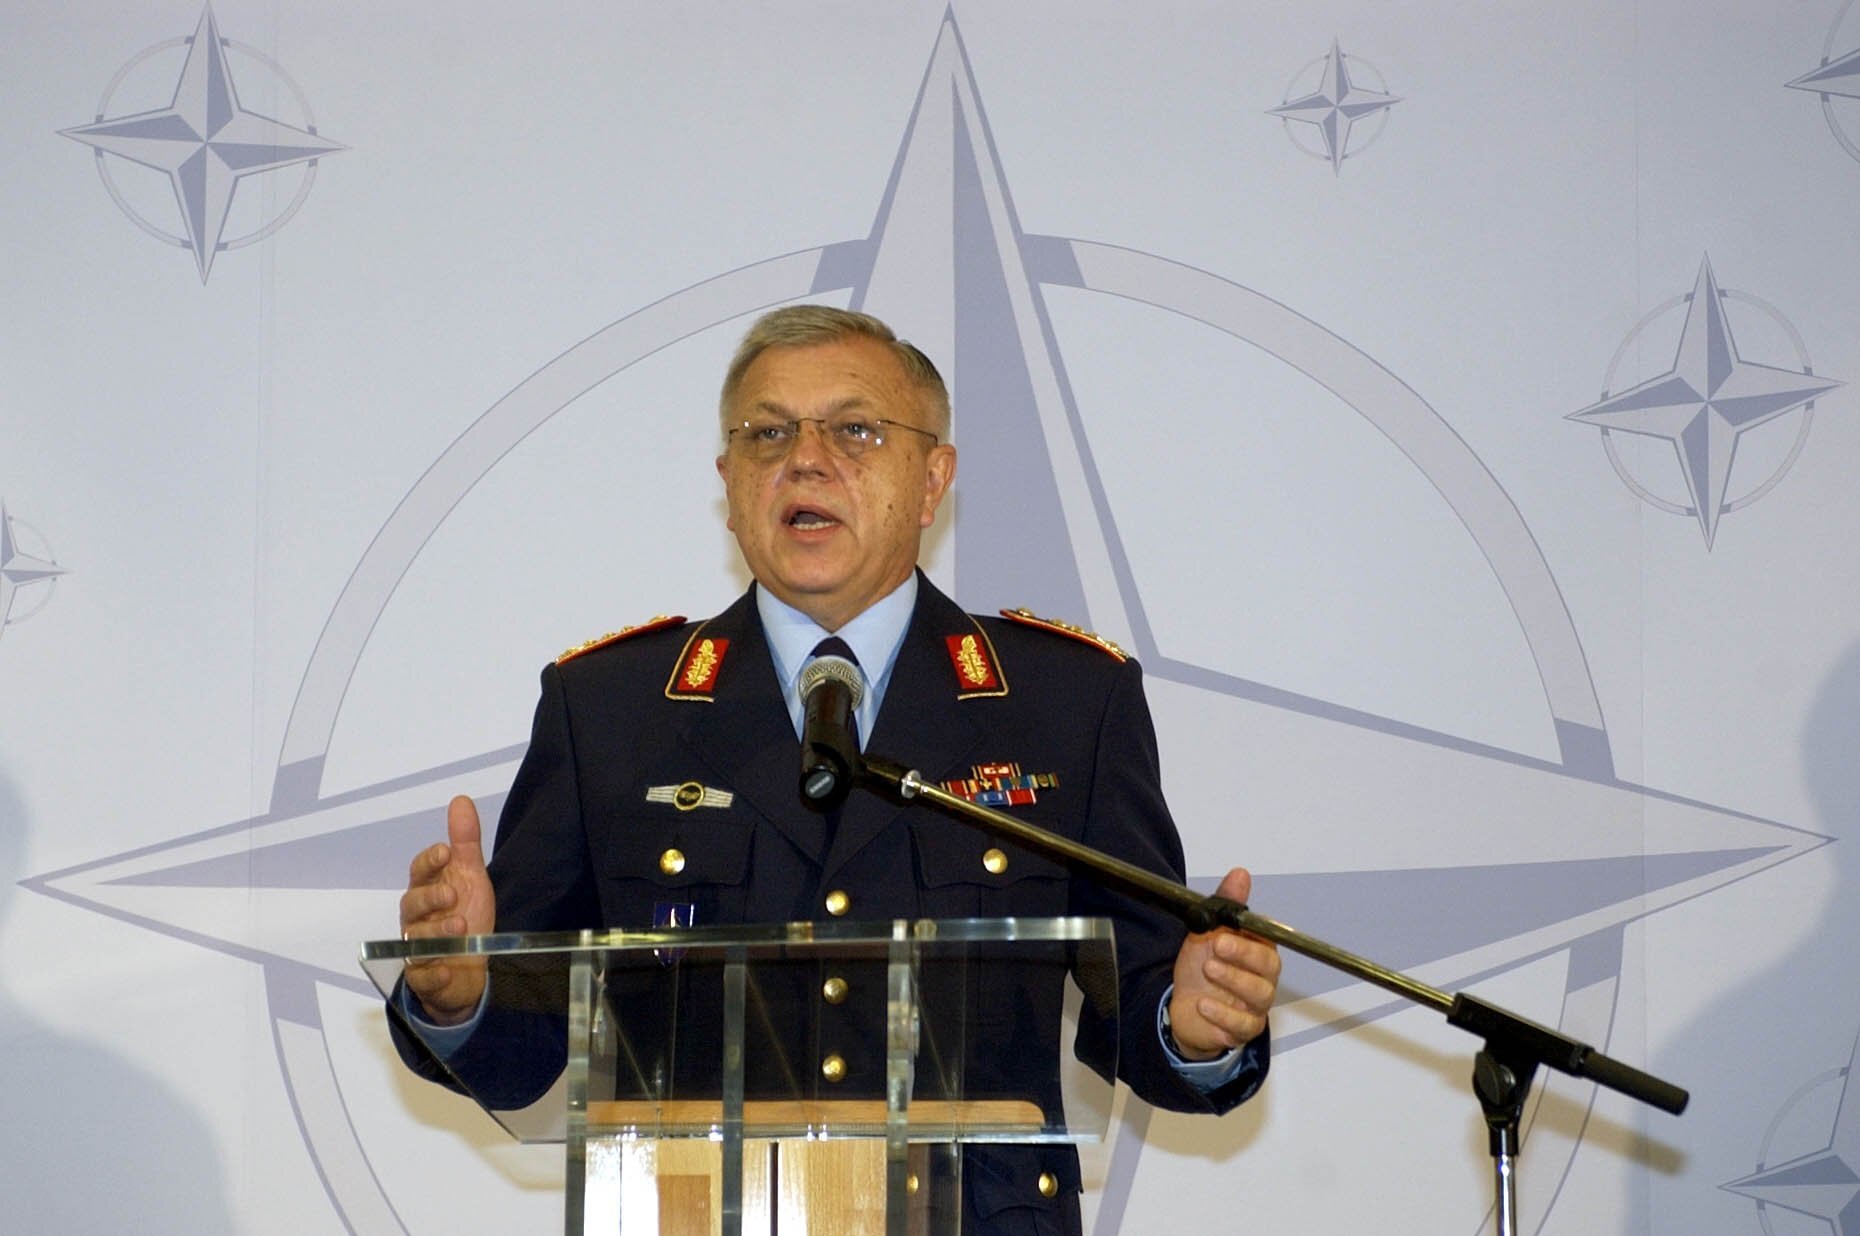 Der Vorsitzende des Nato-Militärausschusses General Harald Kujat, spricht am Montag (09.09.2002) auf einer Pressekonferenz in Berlin. Er informierte über den Besuch des Militärauschusses in Deutschland und über dessen Beratungen. Nach Aussage Kujats spiel